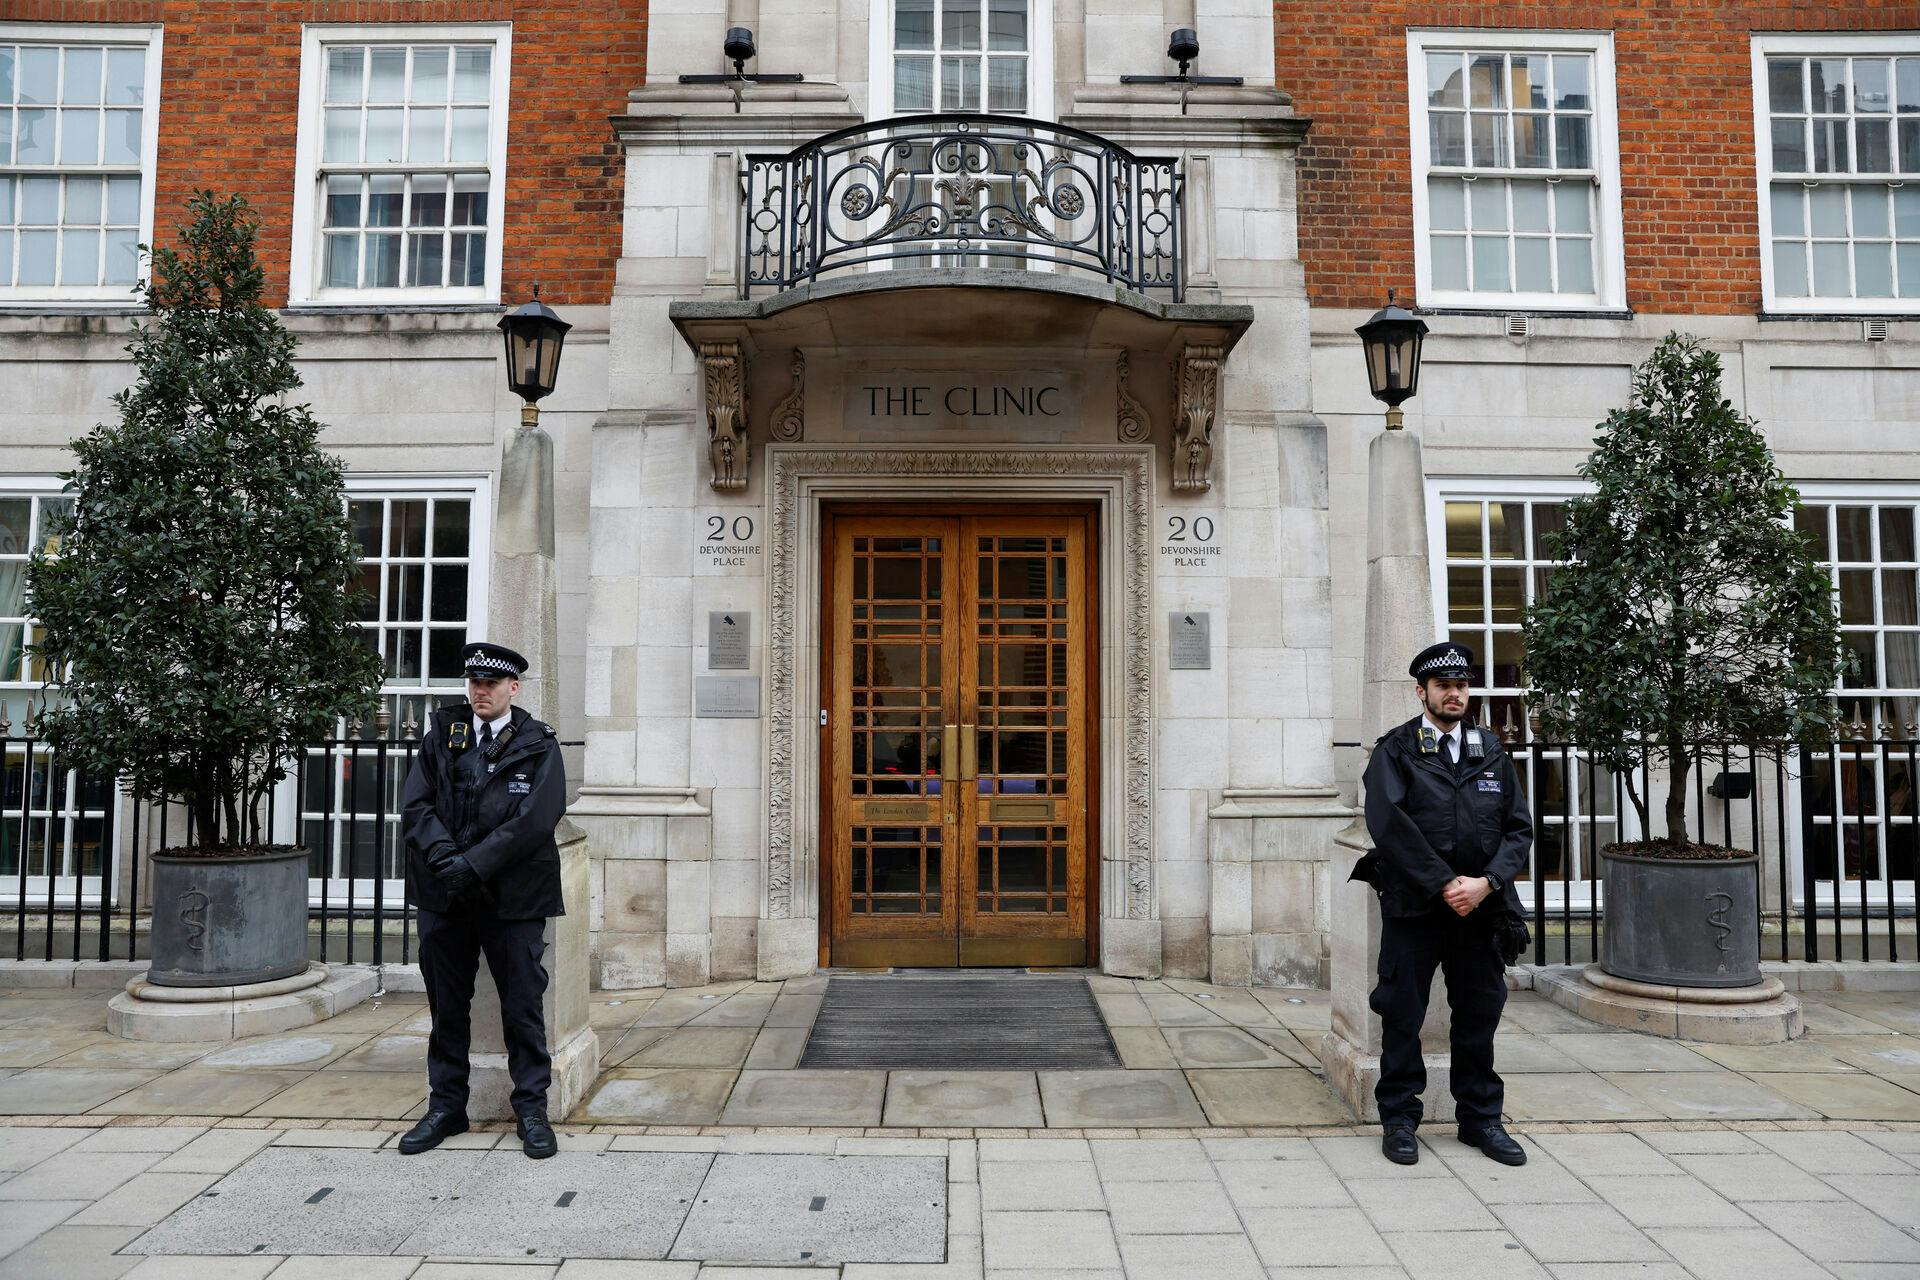 Betjente foran The London Clinic, hvor prinsesse Catherine i disse dage er indlagt efter en maveoperation.